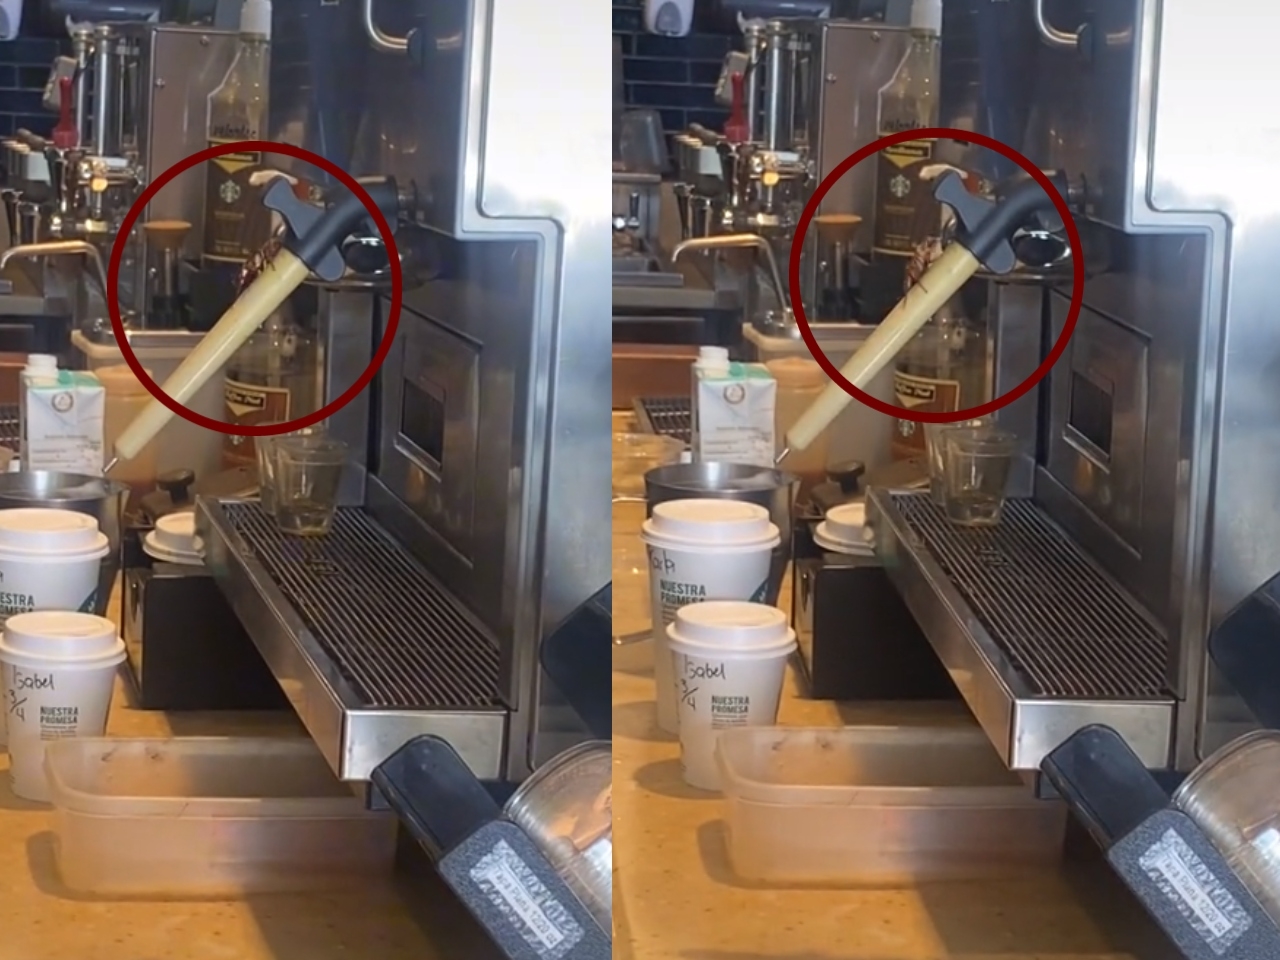 La grabación muestra cómo una cucaracha es retirada de la máquina de café luego de haberse brevemente subido a ella en un Srabucks